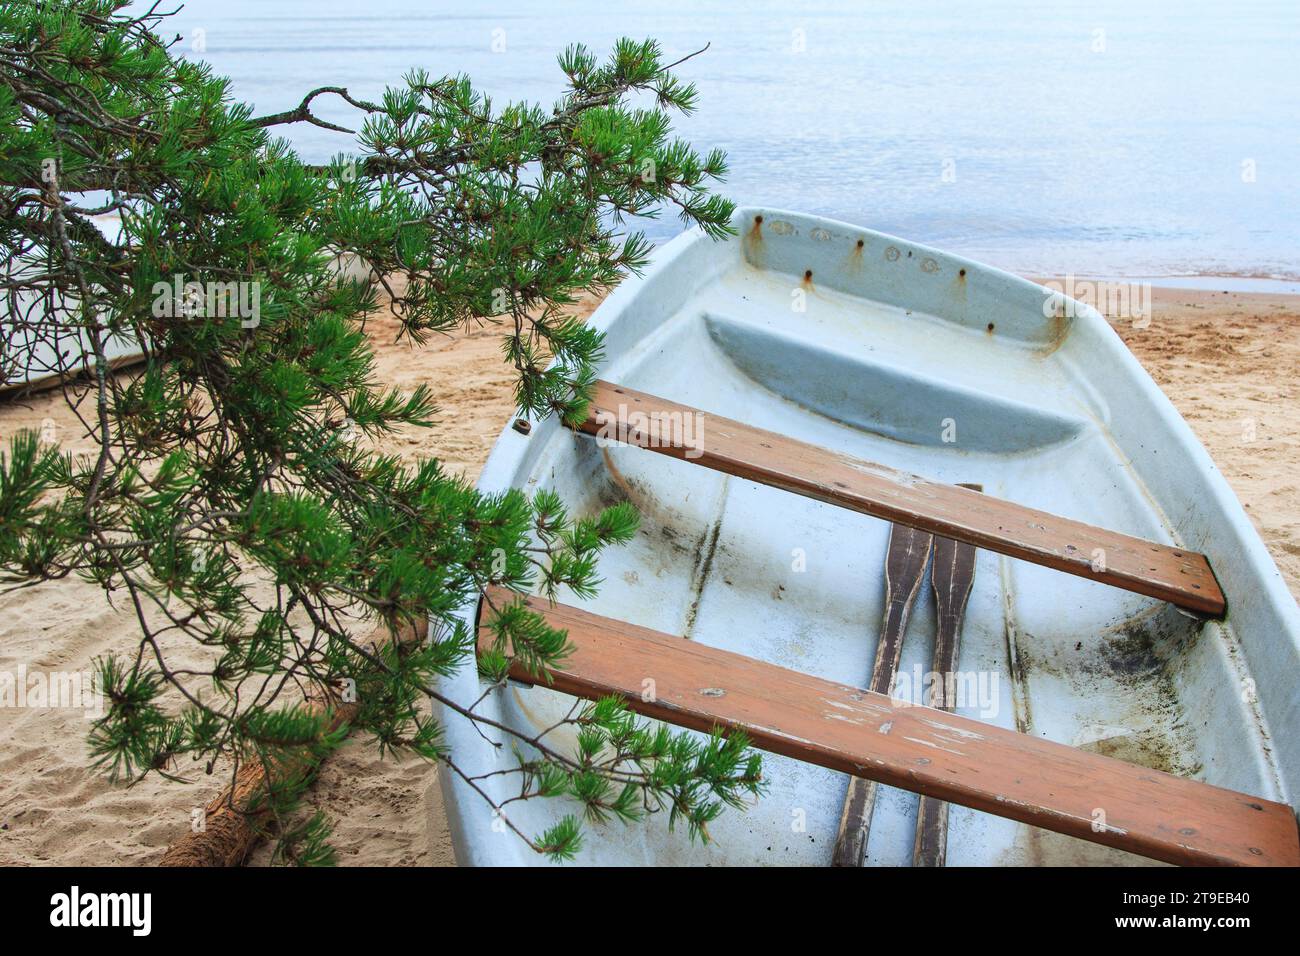 Nahaufnahme eines verlassenen schäbigen Fischerbootes, das an einem Sandstrand in der Nähe des ruhigen Meerwassers liegt. Stockfoto